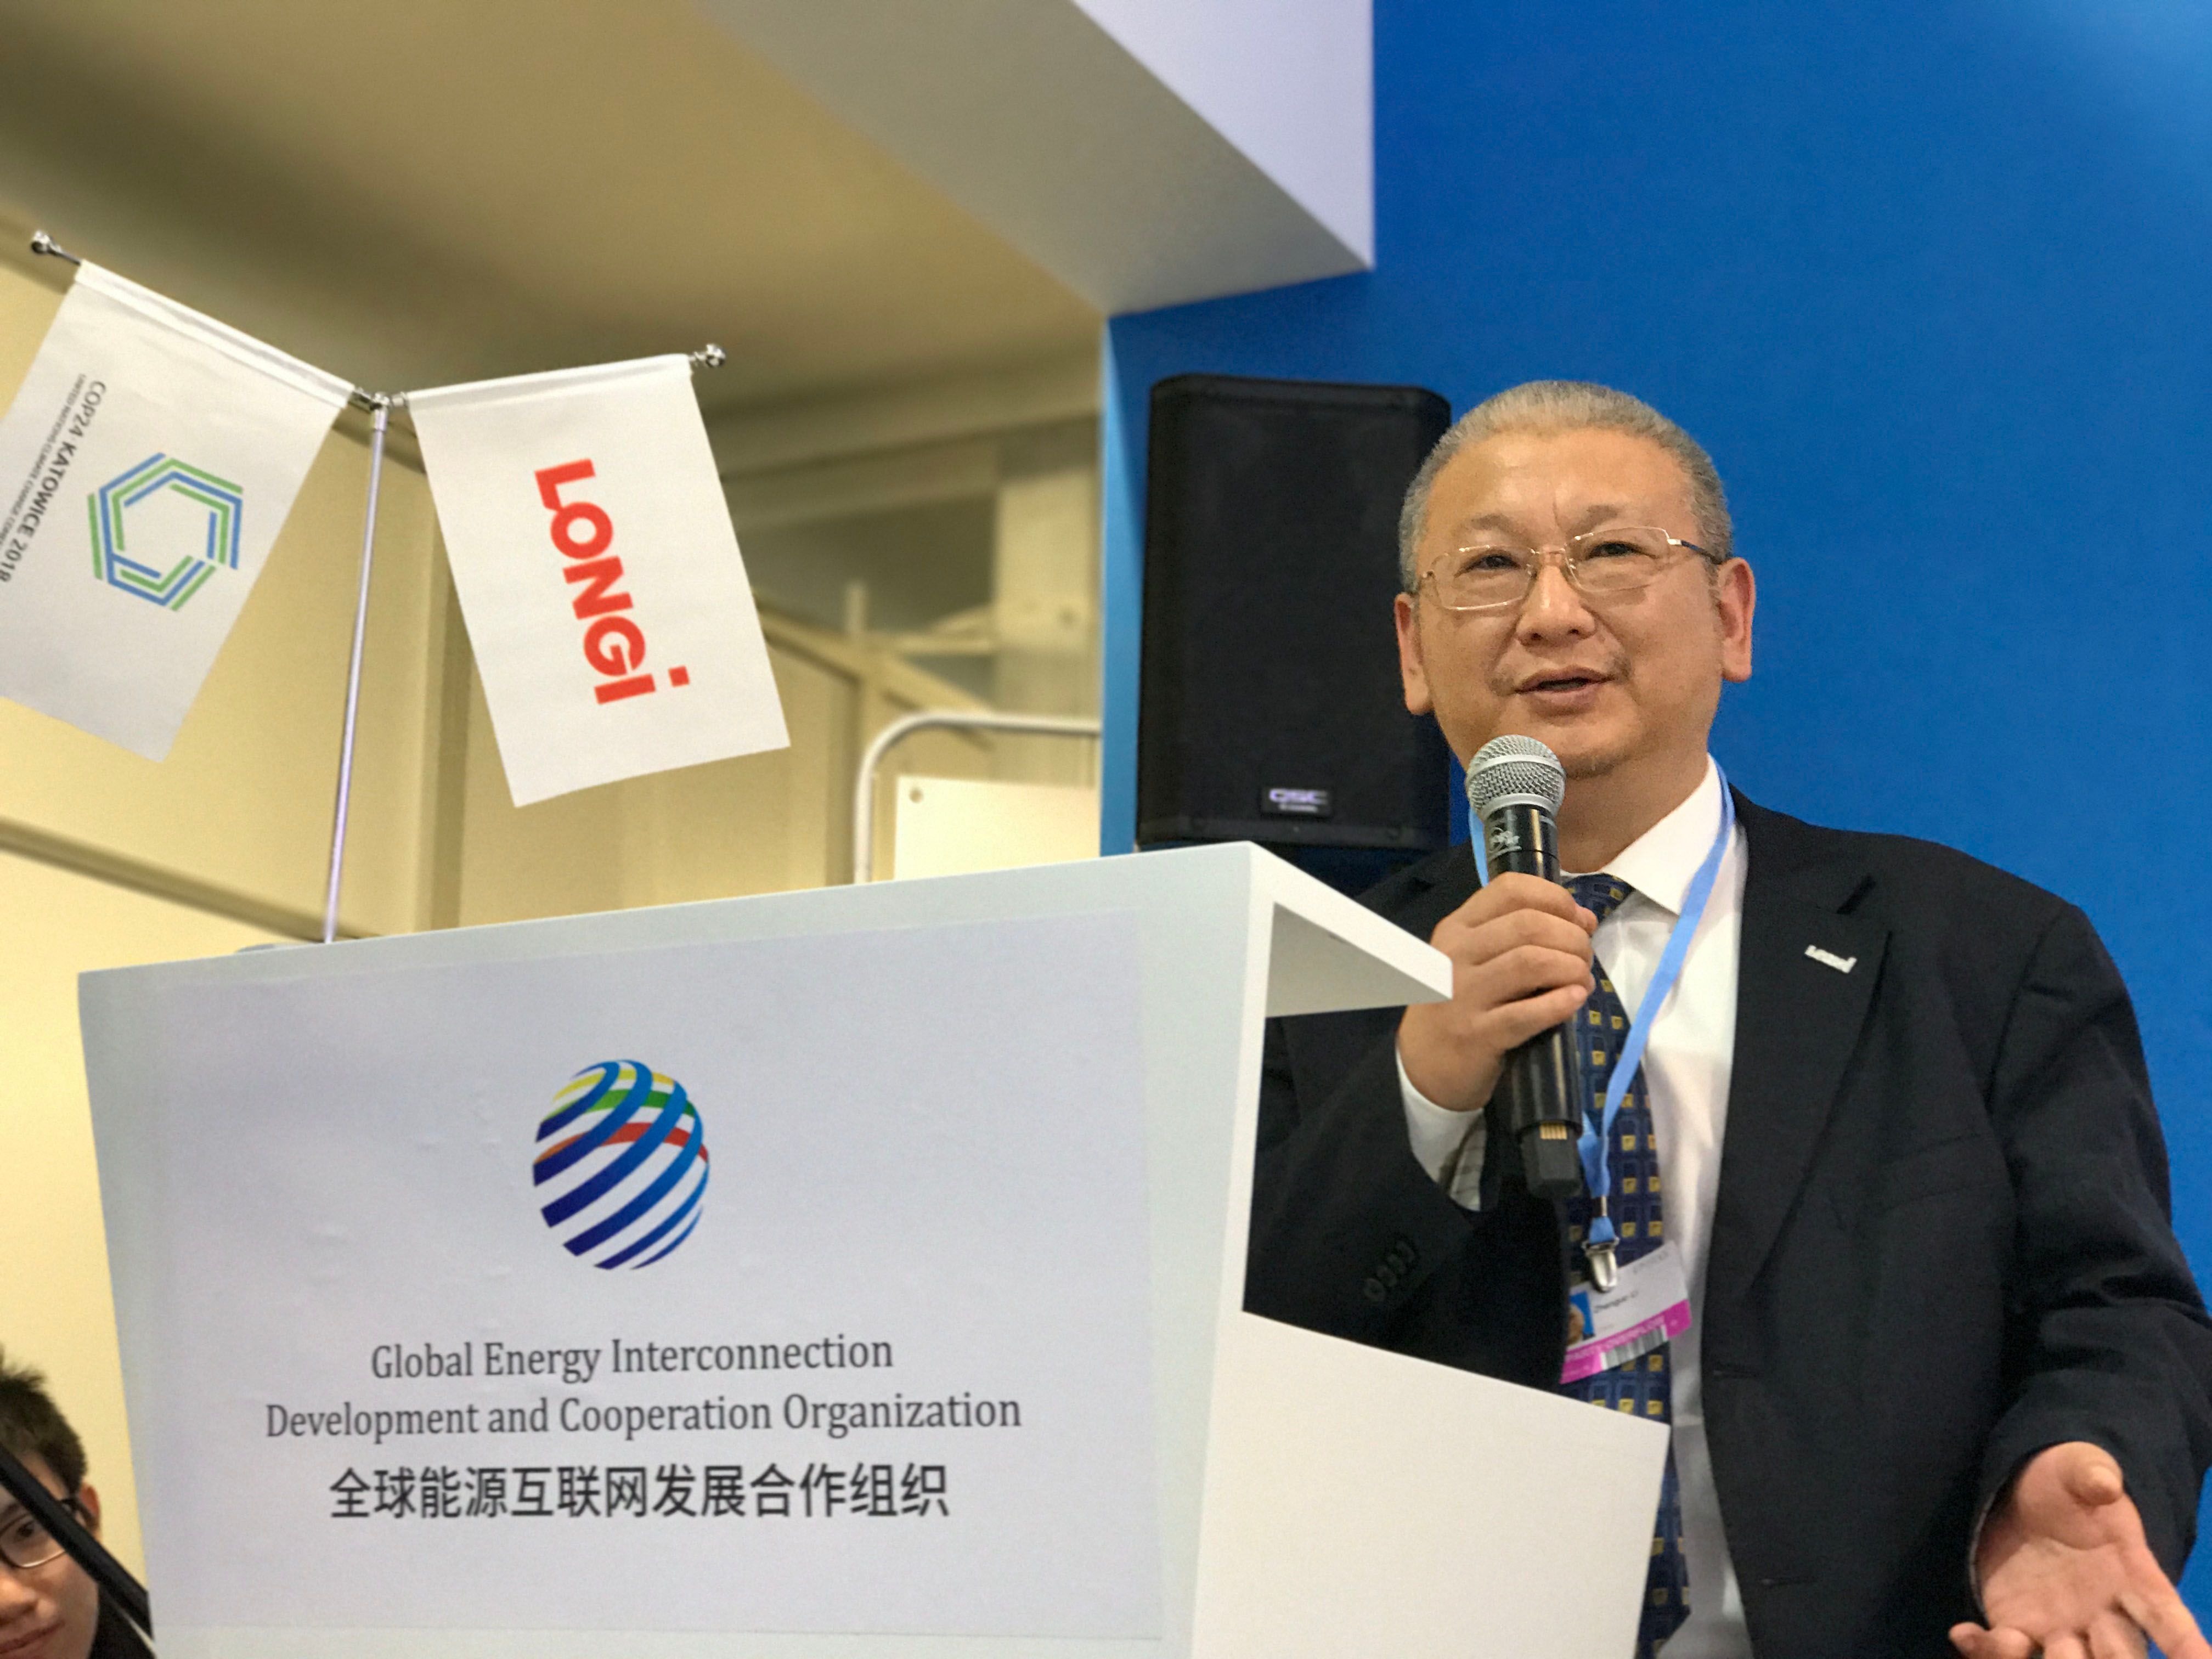 Fondatore, presidente di LONGi S.p.a Li Zhengguo si è presentato nella 24° edizione della Conferenza delle Nazioni Unite sui cambiamenti climatici e pronunciato un discorso tematico.